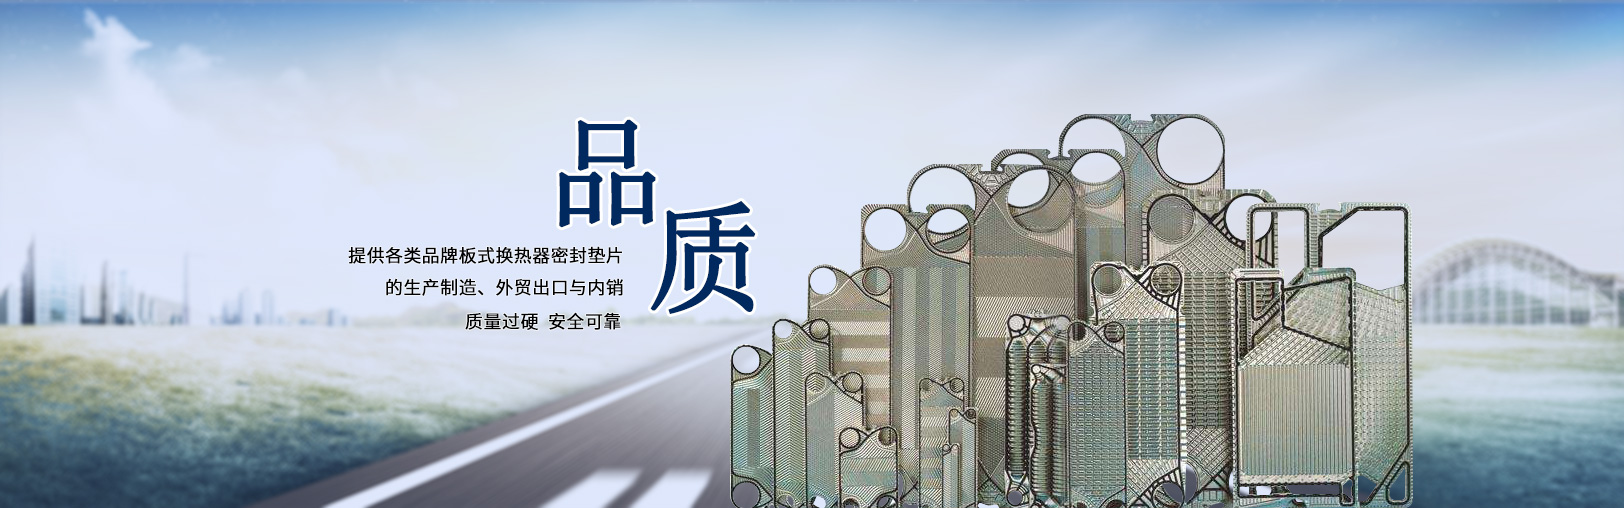 江苏欧迈格板式换热器制造有限公司